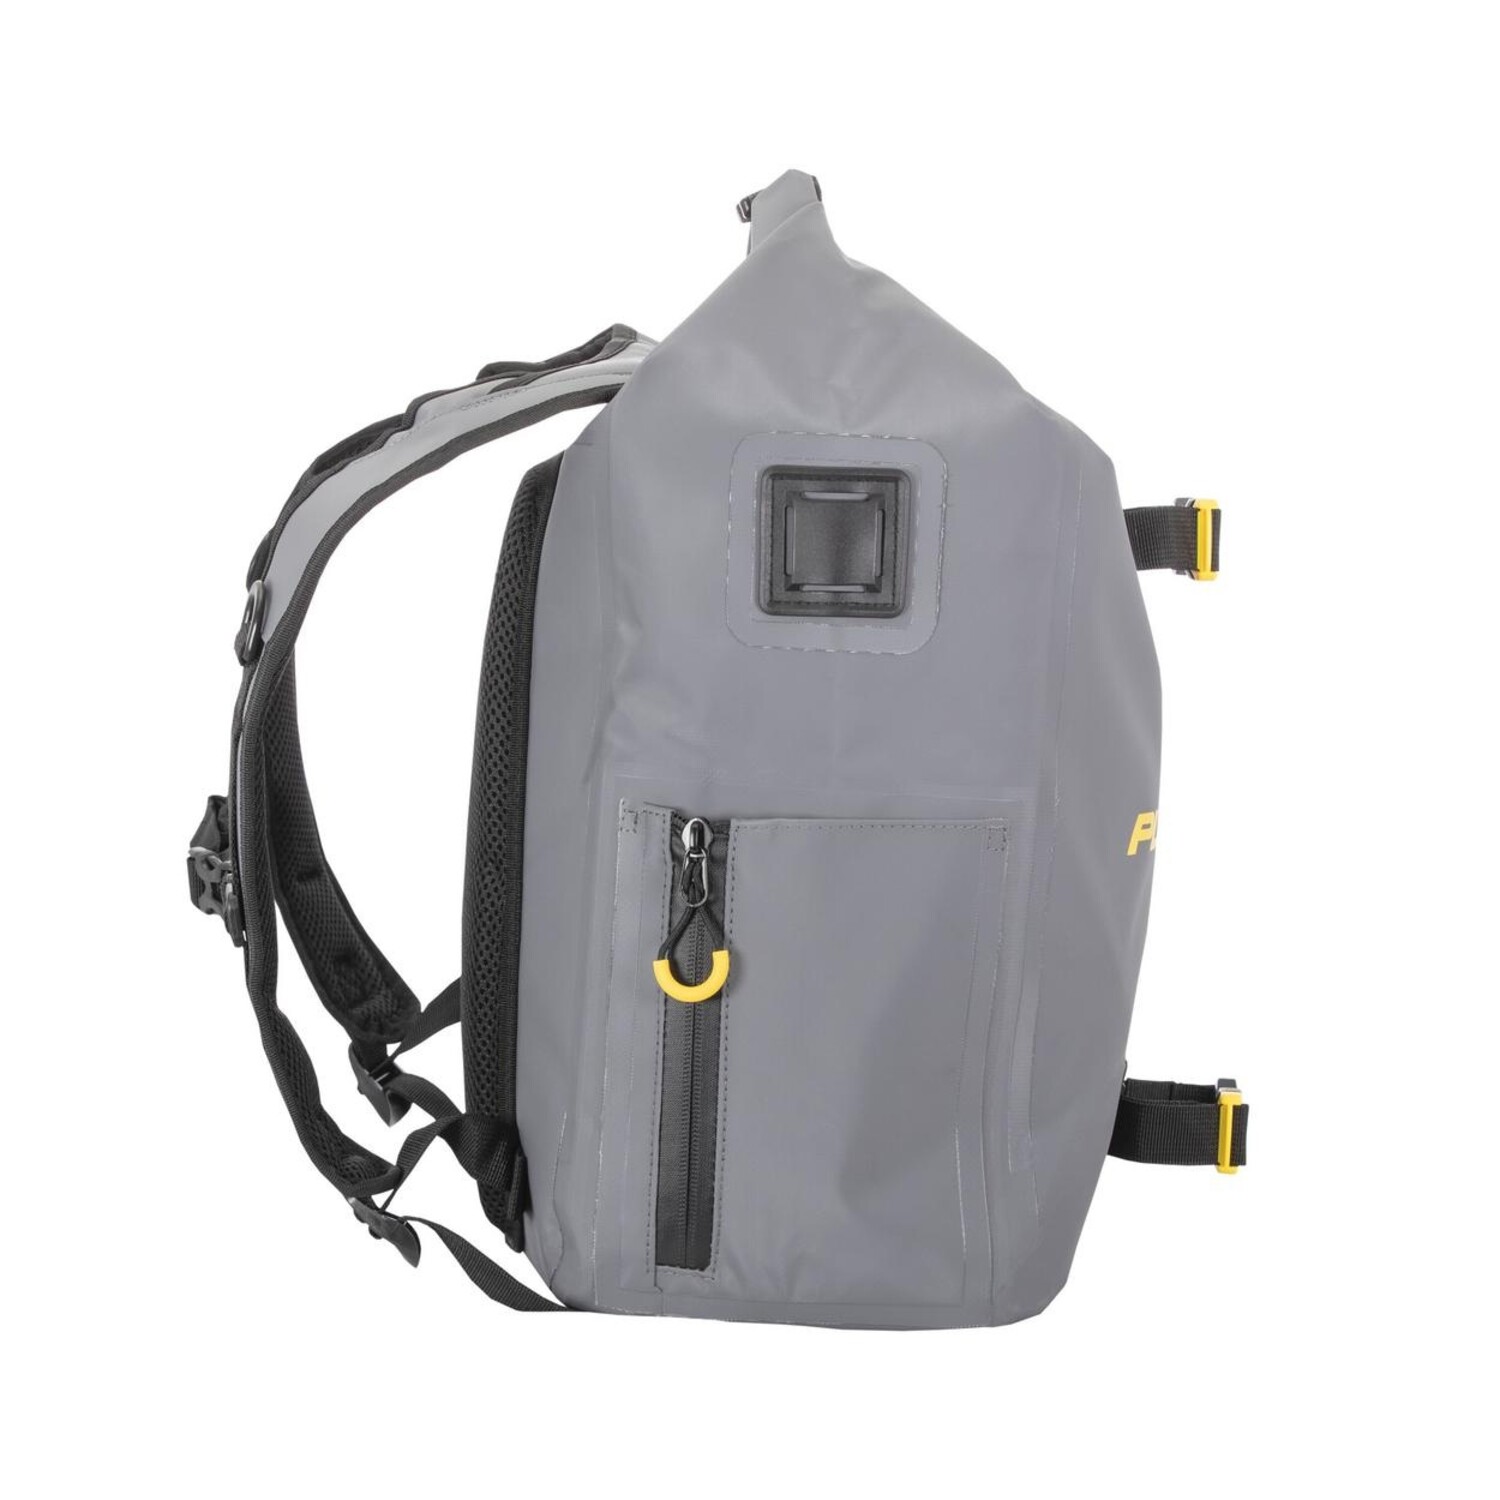 https://cdn.shoplightspeed.com/shops/648839/files/58297527/1500x4000x3/plano-plano-z-series-waterproof-backpack.jpg